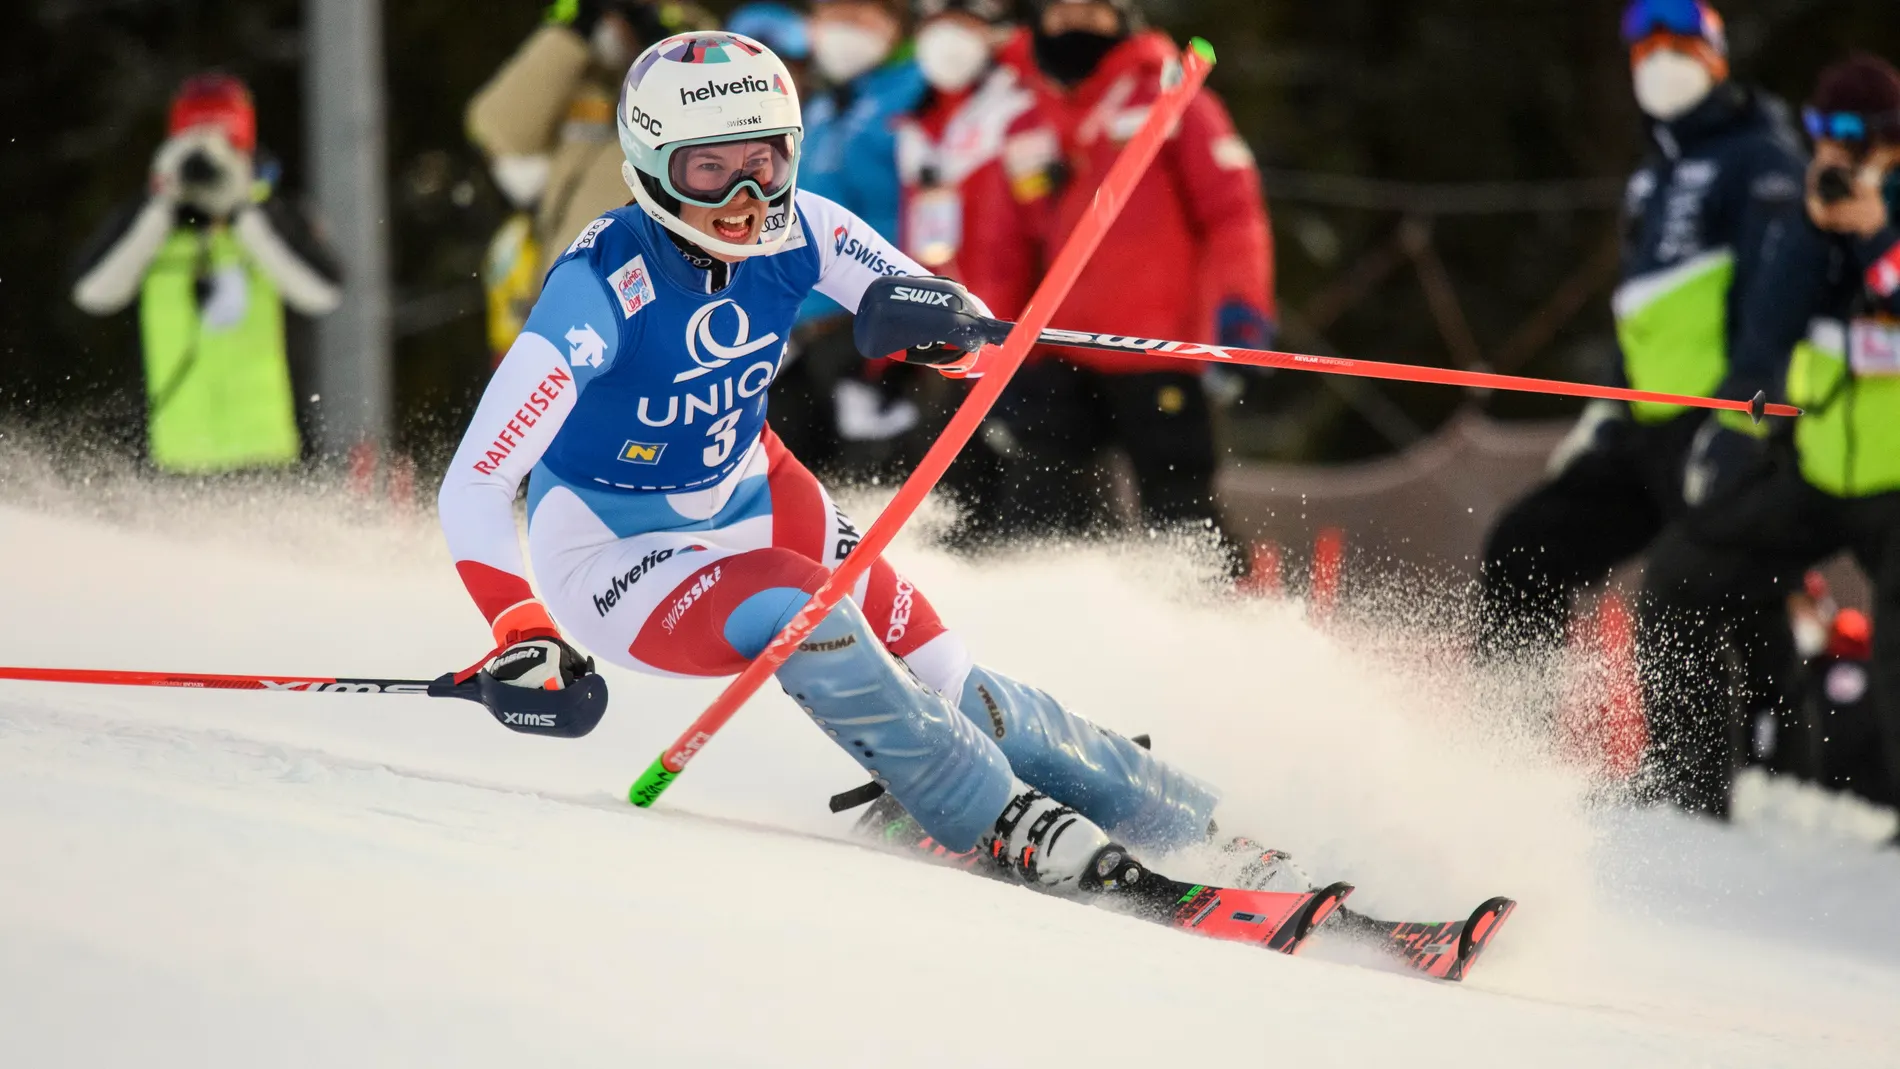 Michelle Gisin de Suiza en acción durante la primera carrera de Slalom Femenino en la Copa del Mundo de Esquí Alpino de la FIS en Semmering, Austria, 29 de diciembre de 2020. EFE/EPA/CHRISTIAN BRUNA